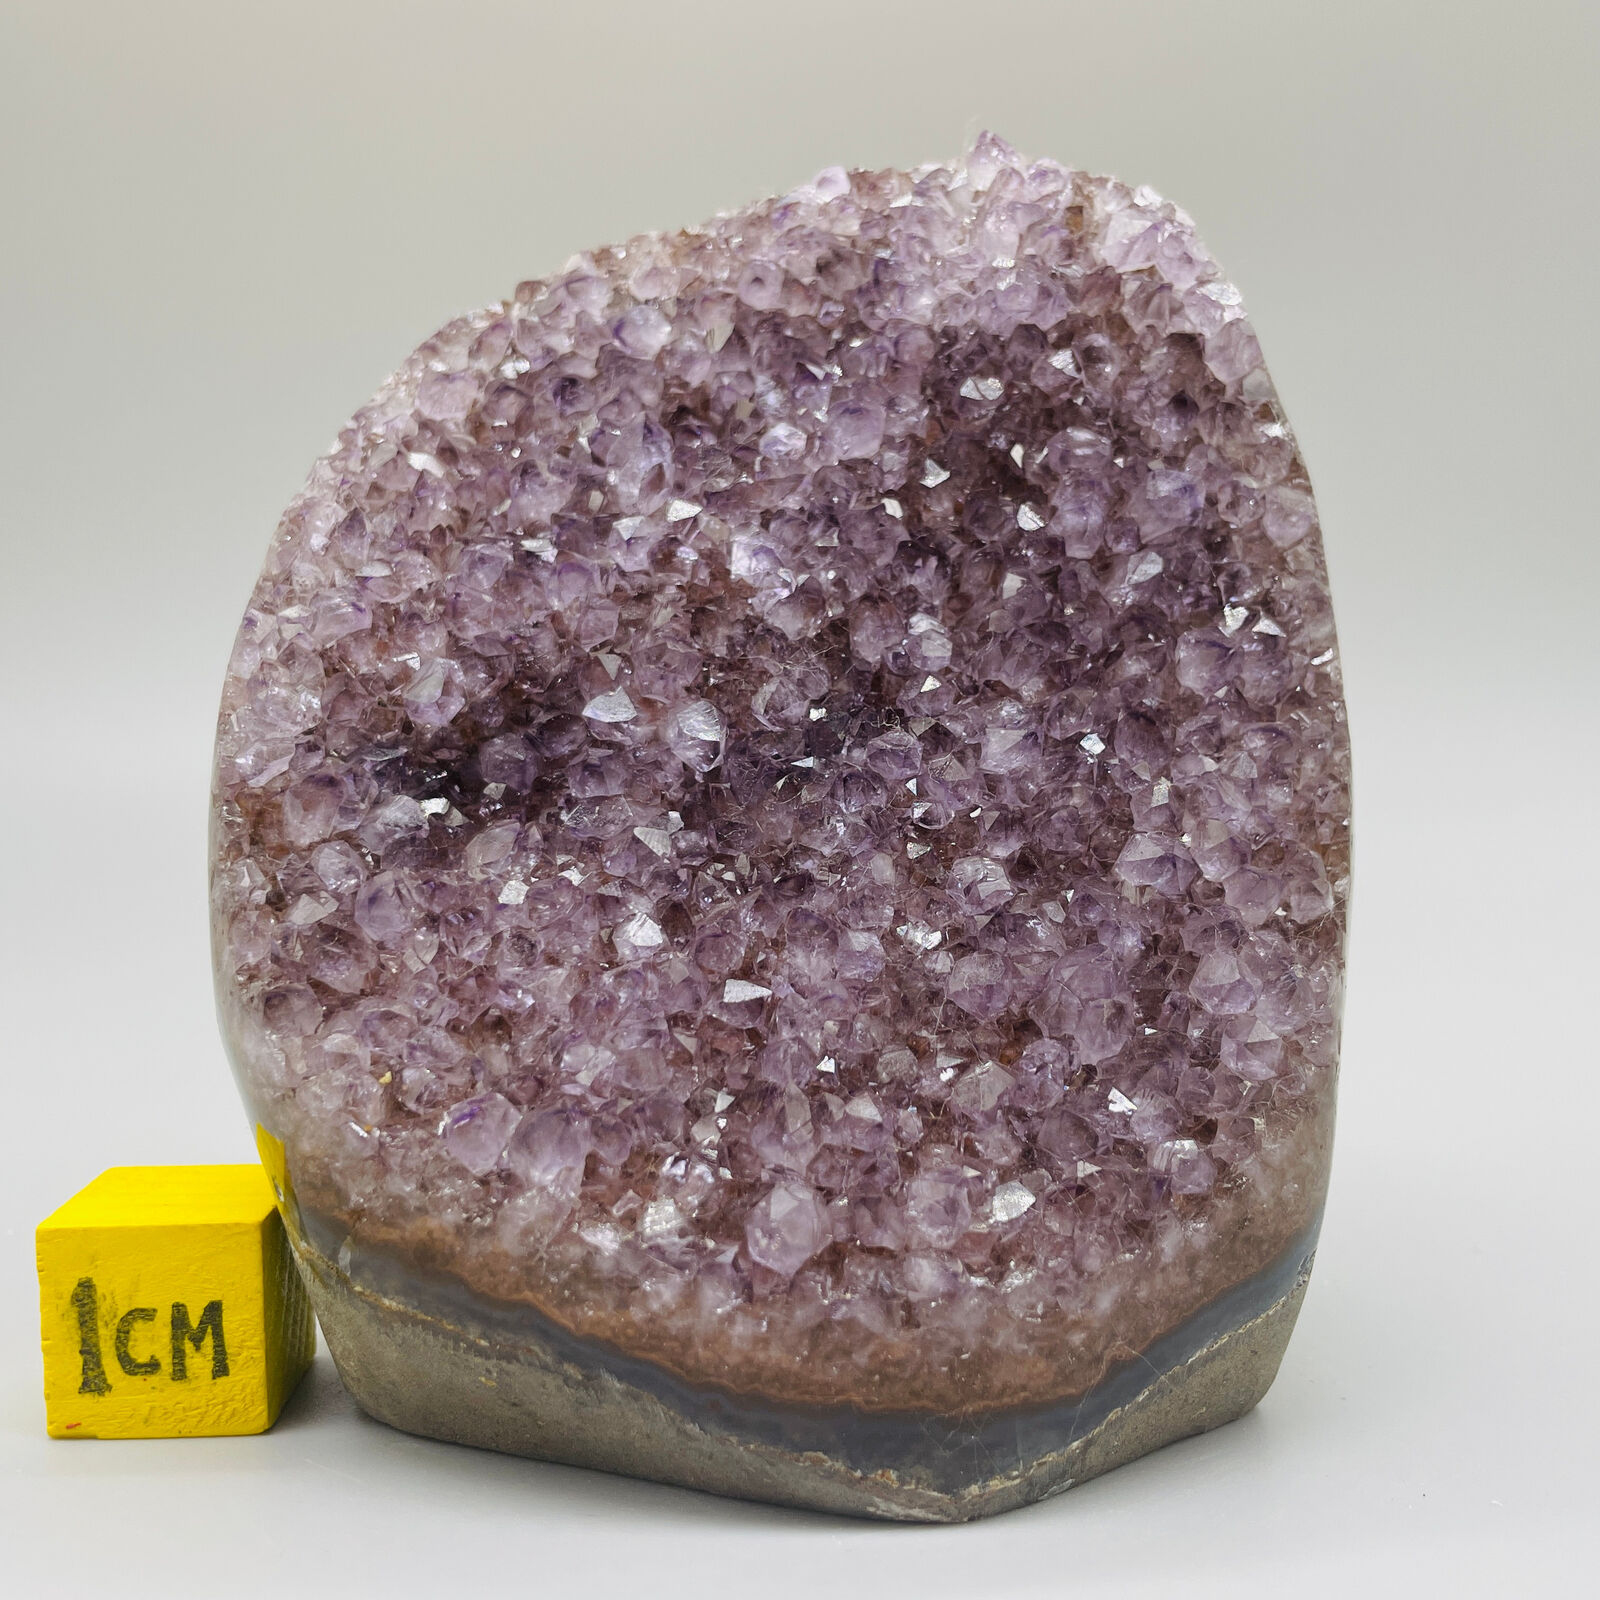 1095g Natural Amethyst Cluster Mineral Specimen Quartz Healing Crystal Gift